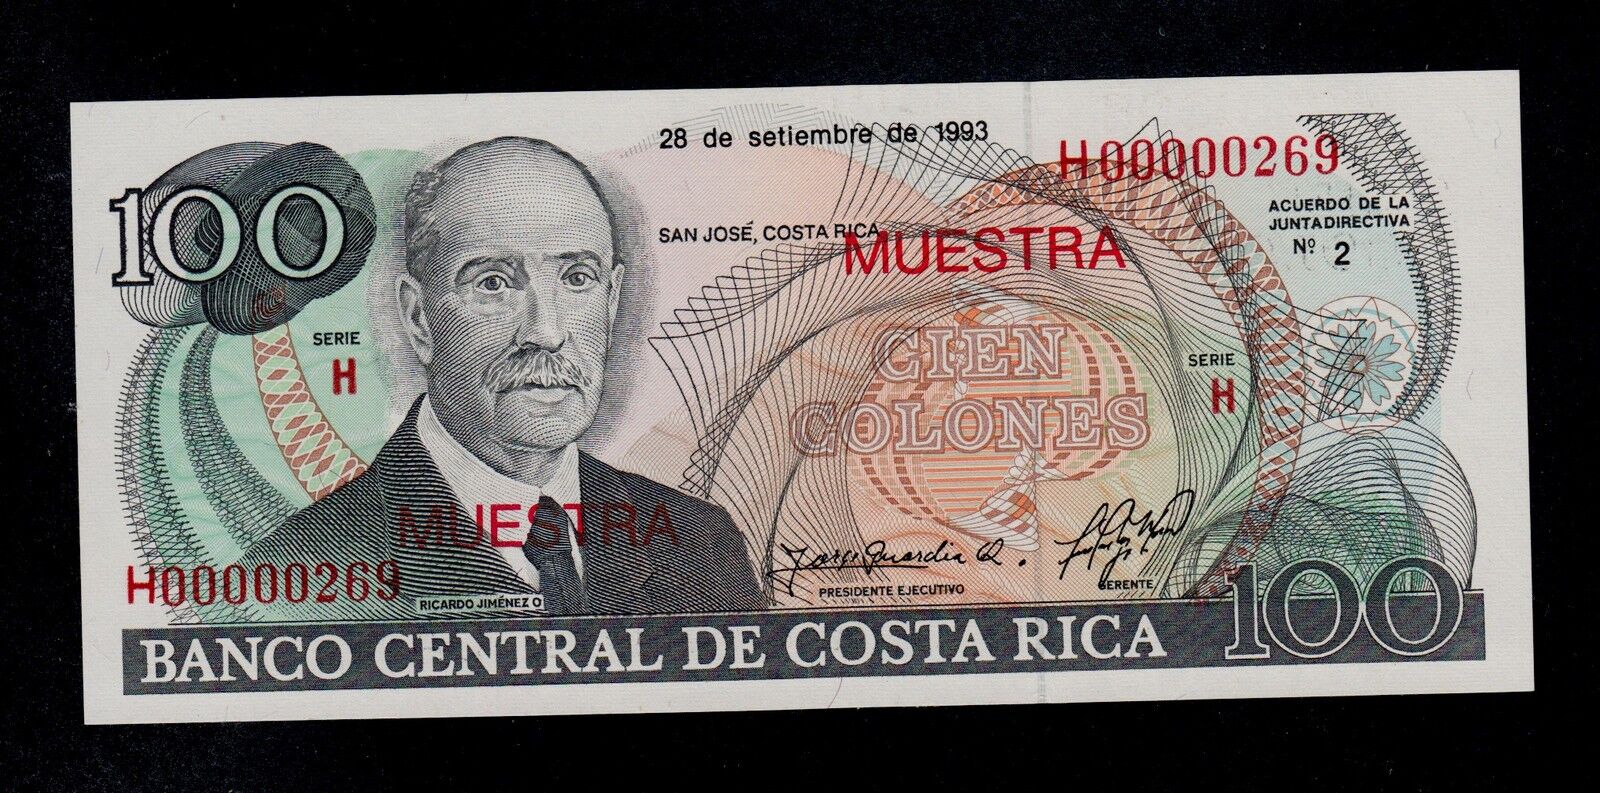 COSTA RICA  SPECIMEN  100 COLONES 1993  PICK # 261  UNC. Standardowa edycja limitowana